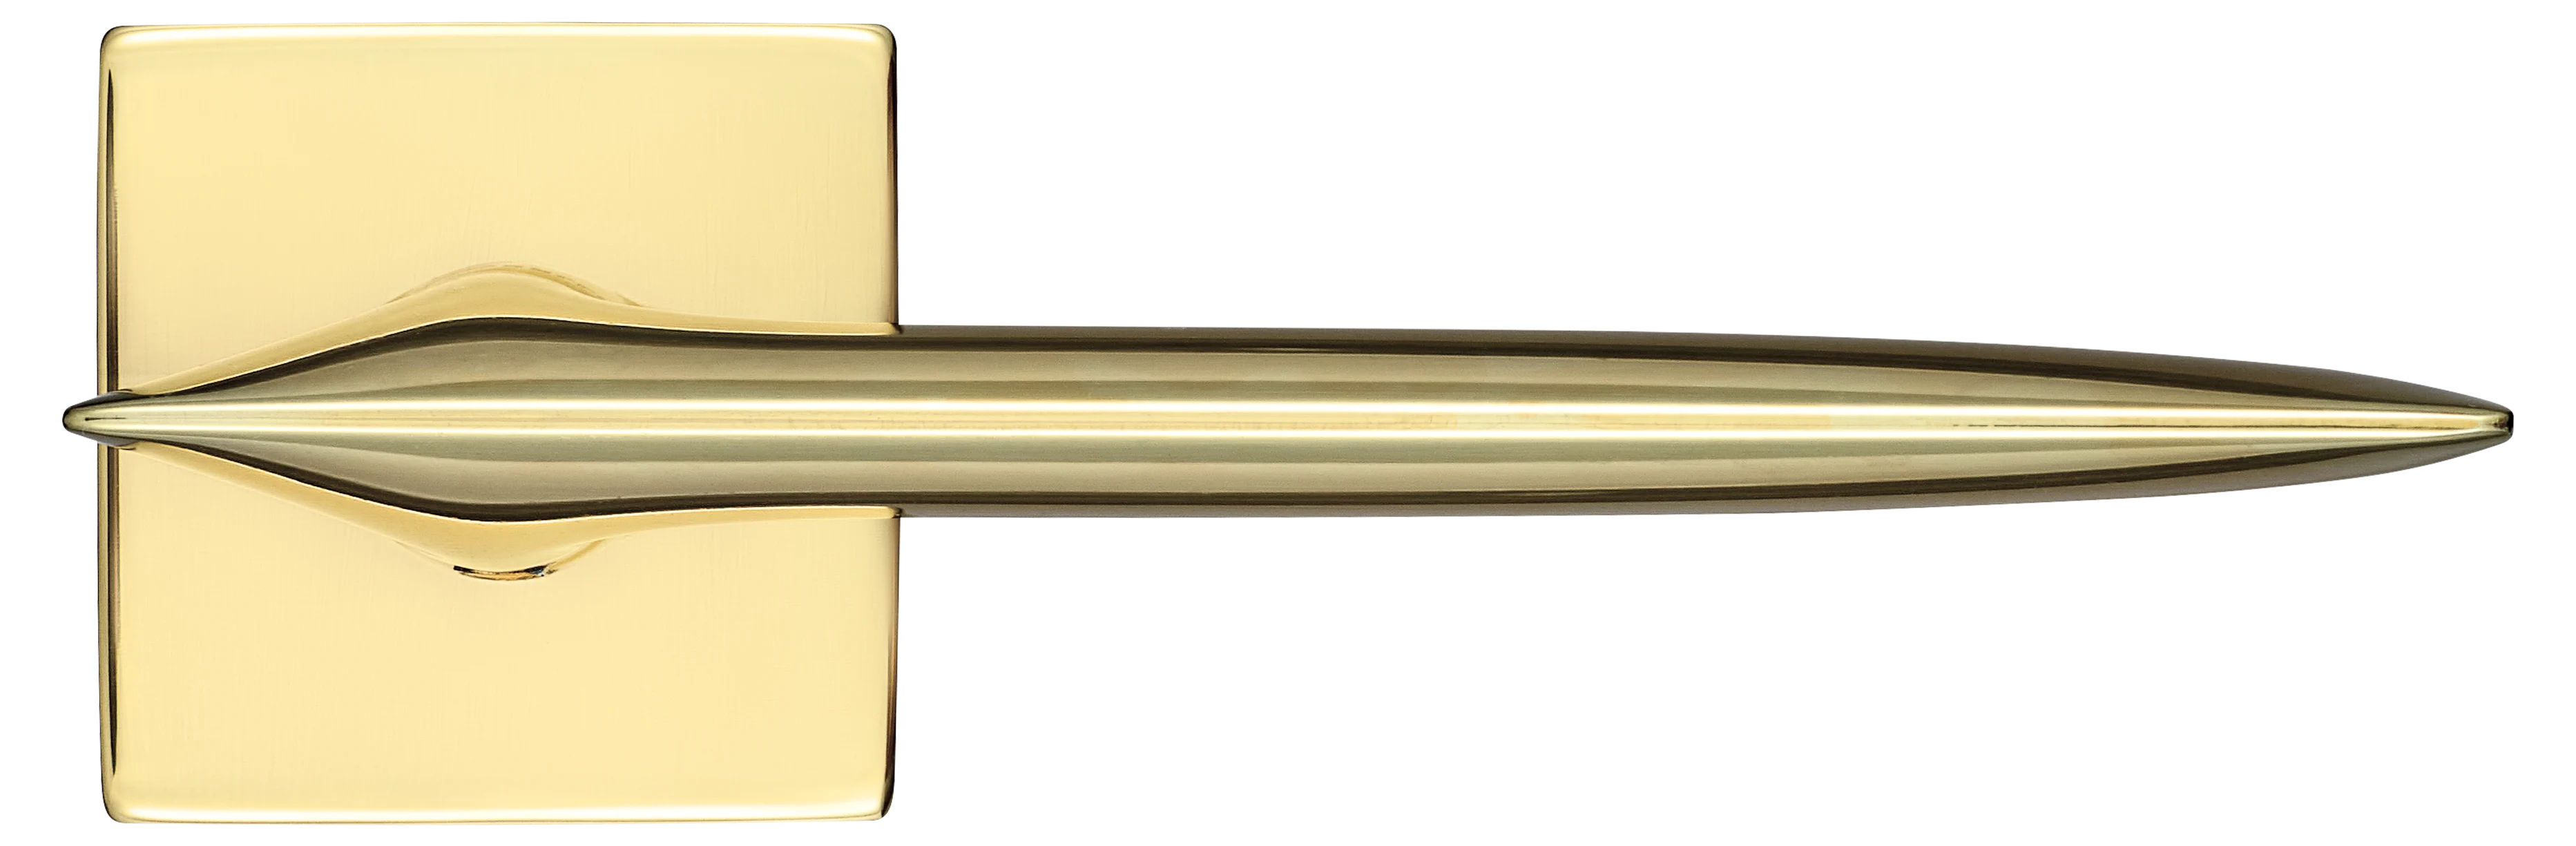 GALACTIC S5 OTL, ручка дверная, цвет -  золото фото купить в Самаре